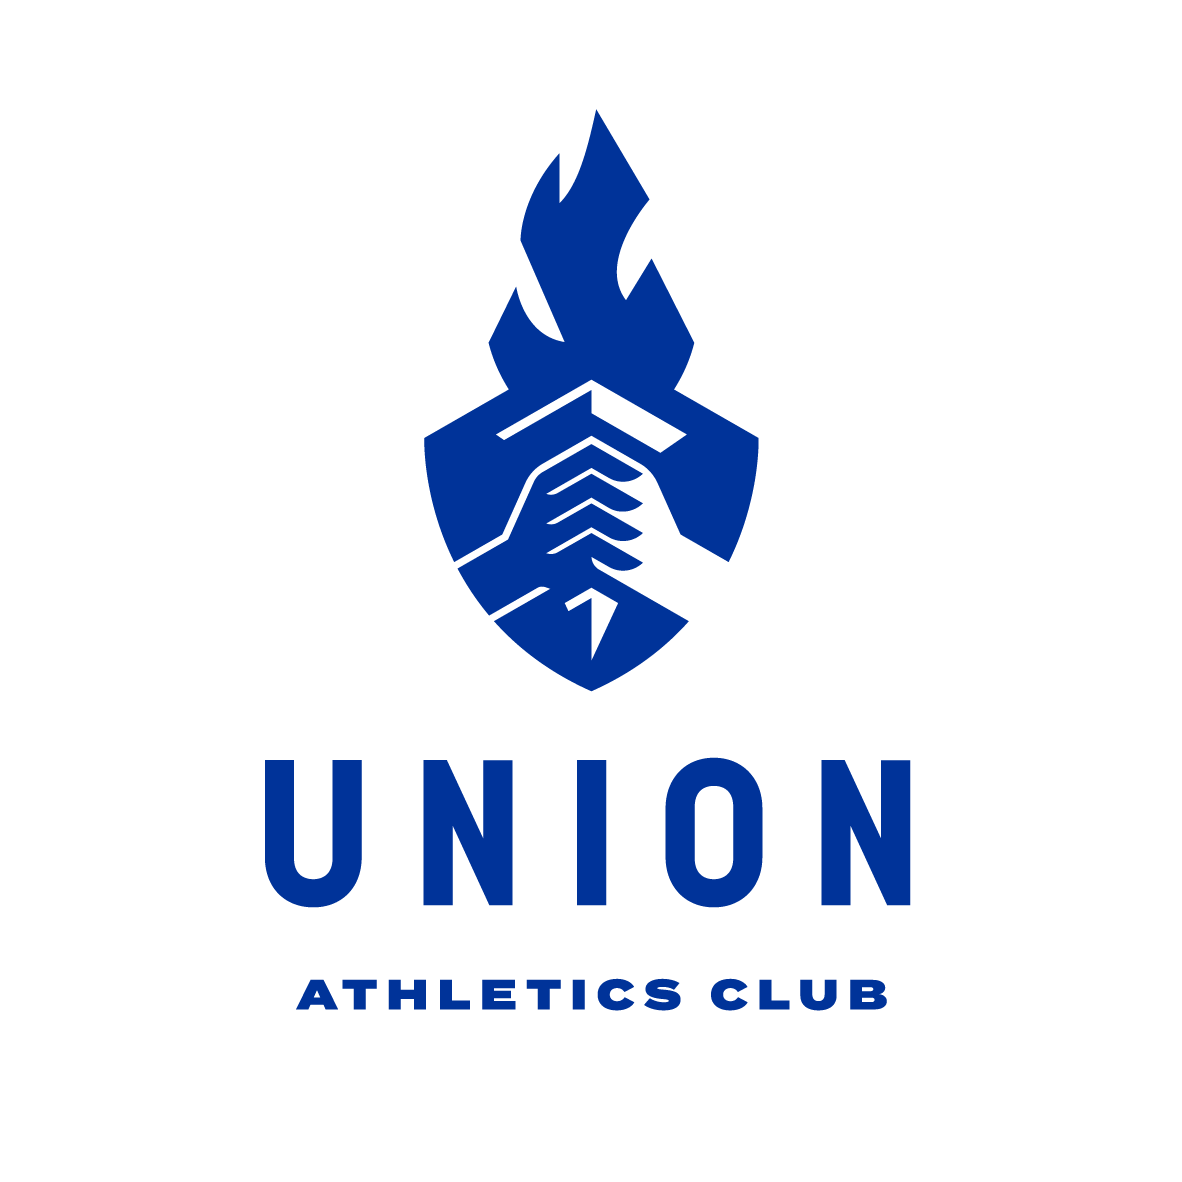 003 05160 Union Athletic Club Logoand Wordmark Original Darker Hyper Blue Torch Barer2 A